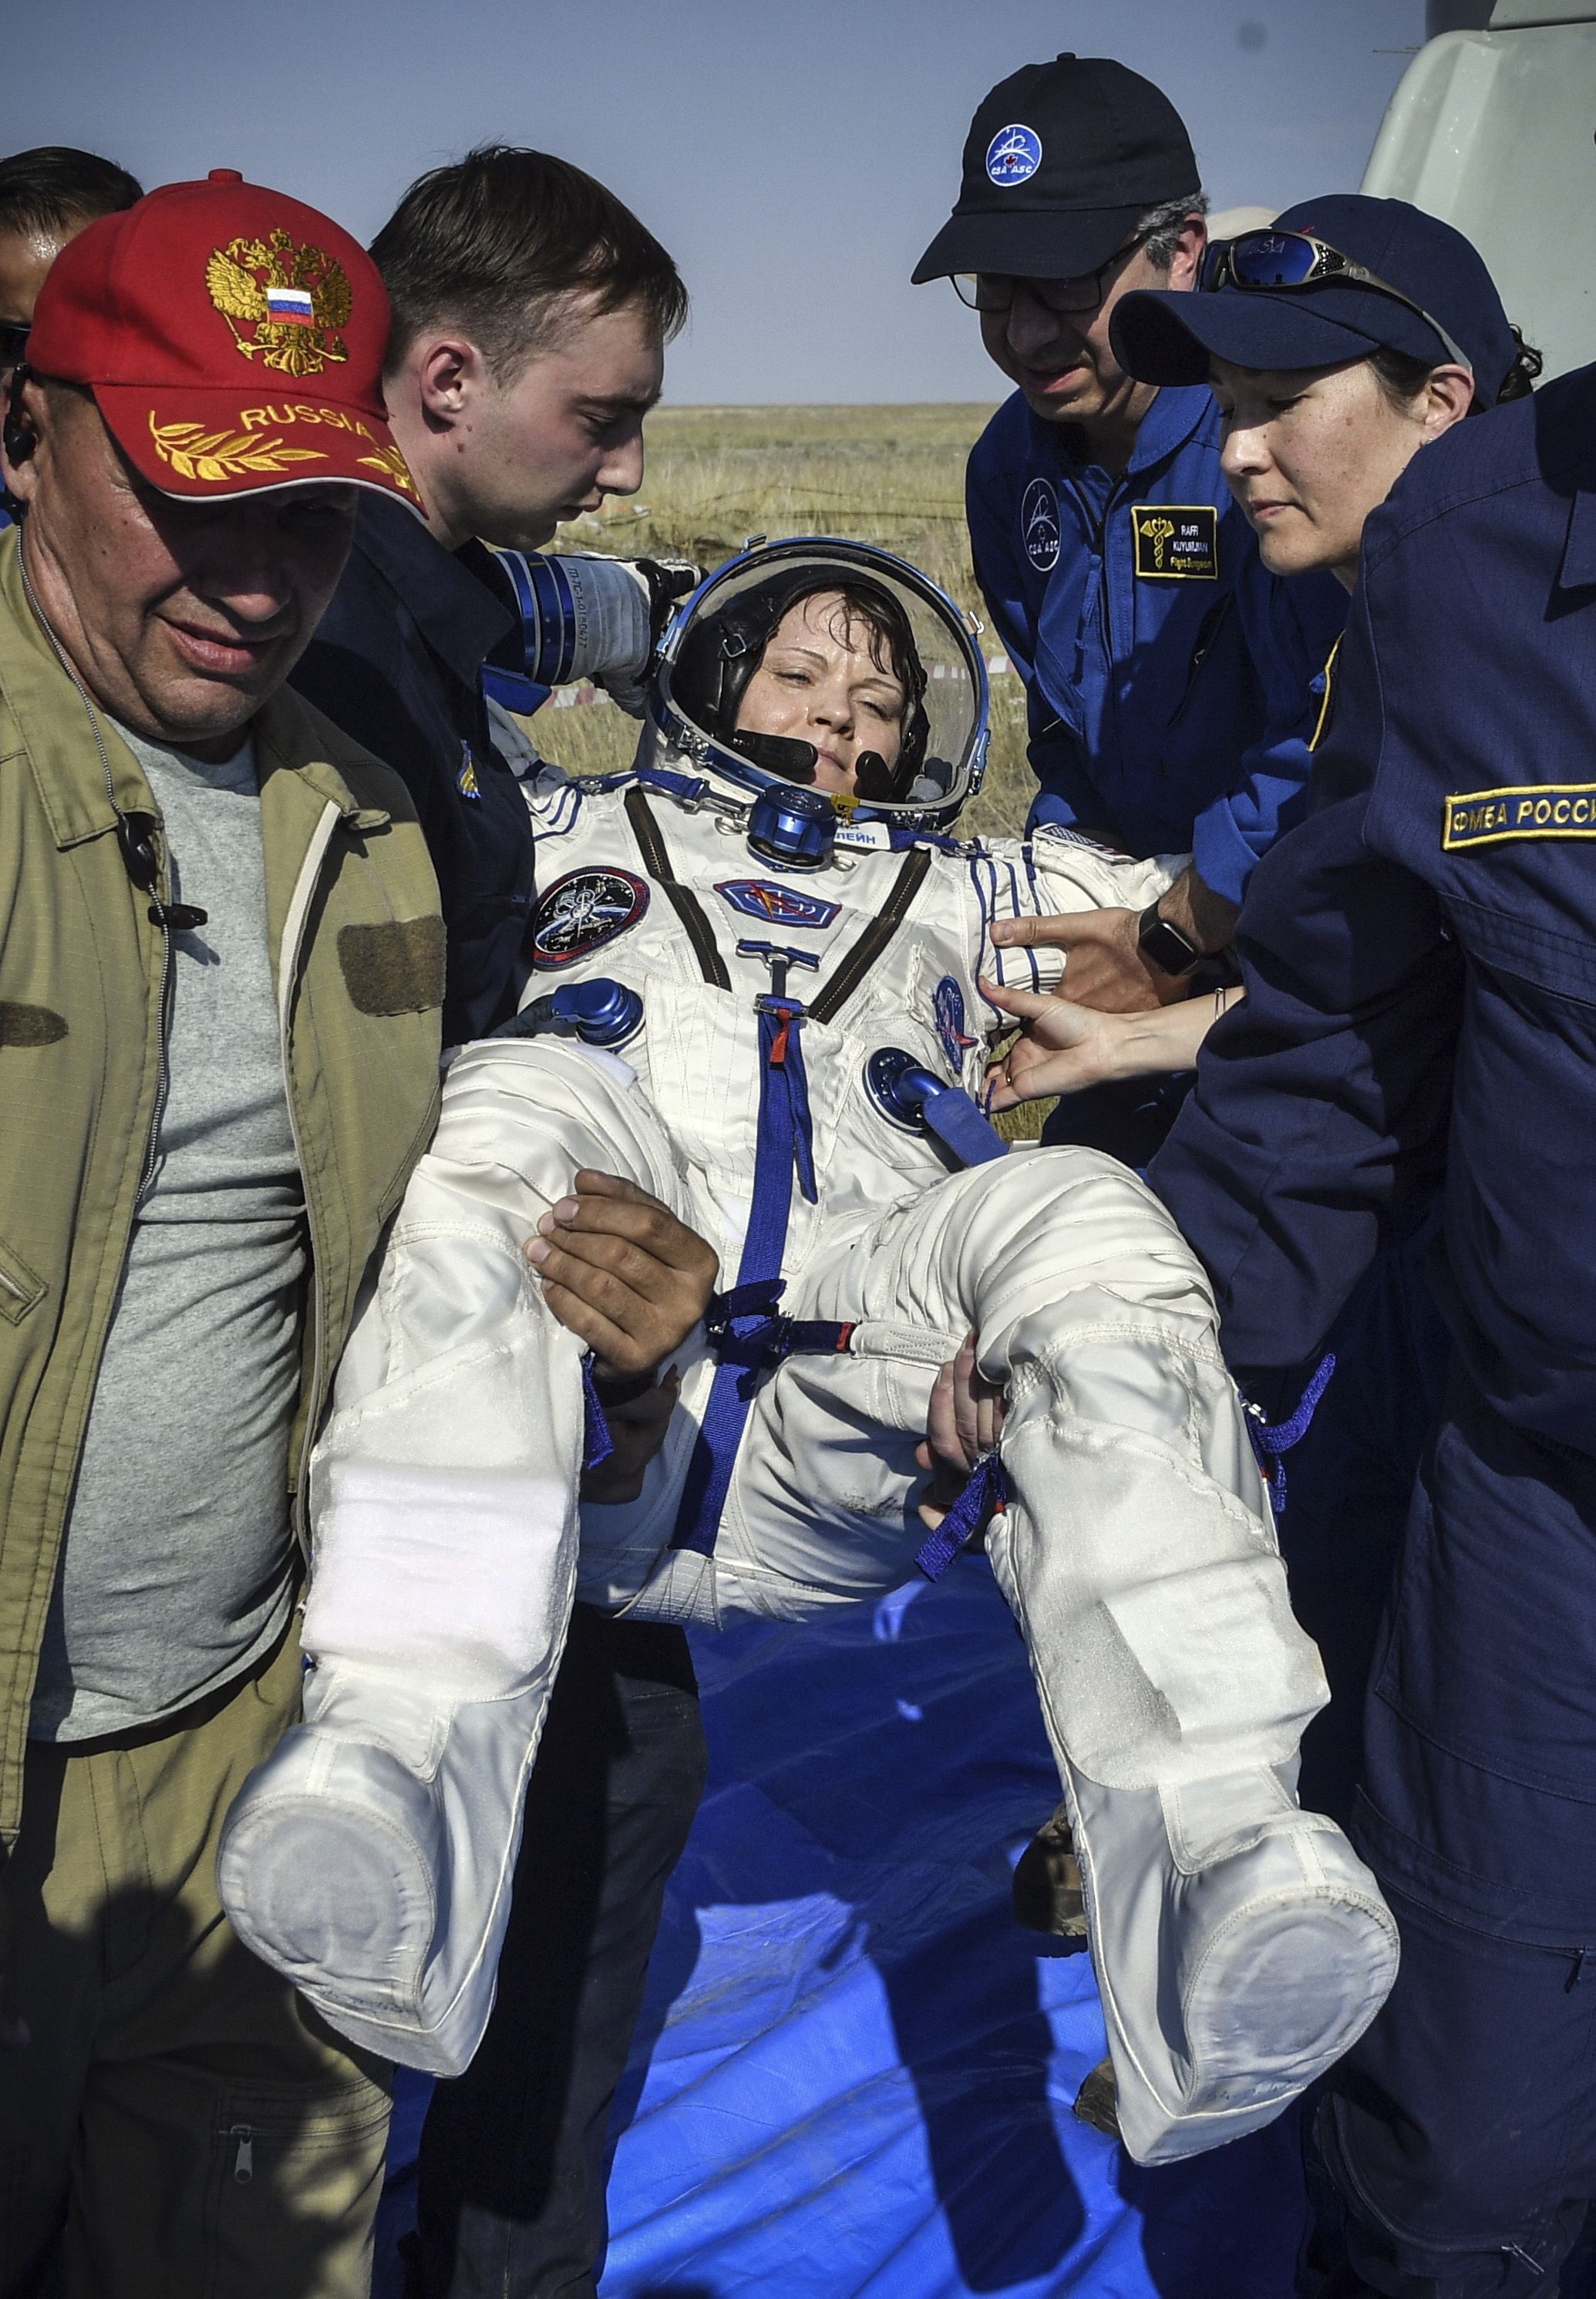 NASA vyšetruje prvý vesmírny trestný čin. Astronautka sa mala z paluby ISS vlámať do bankového účtu exmanželky